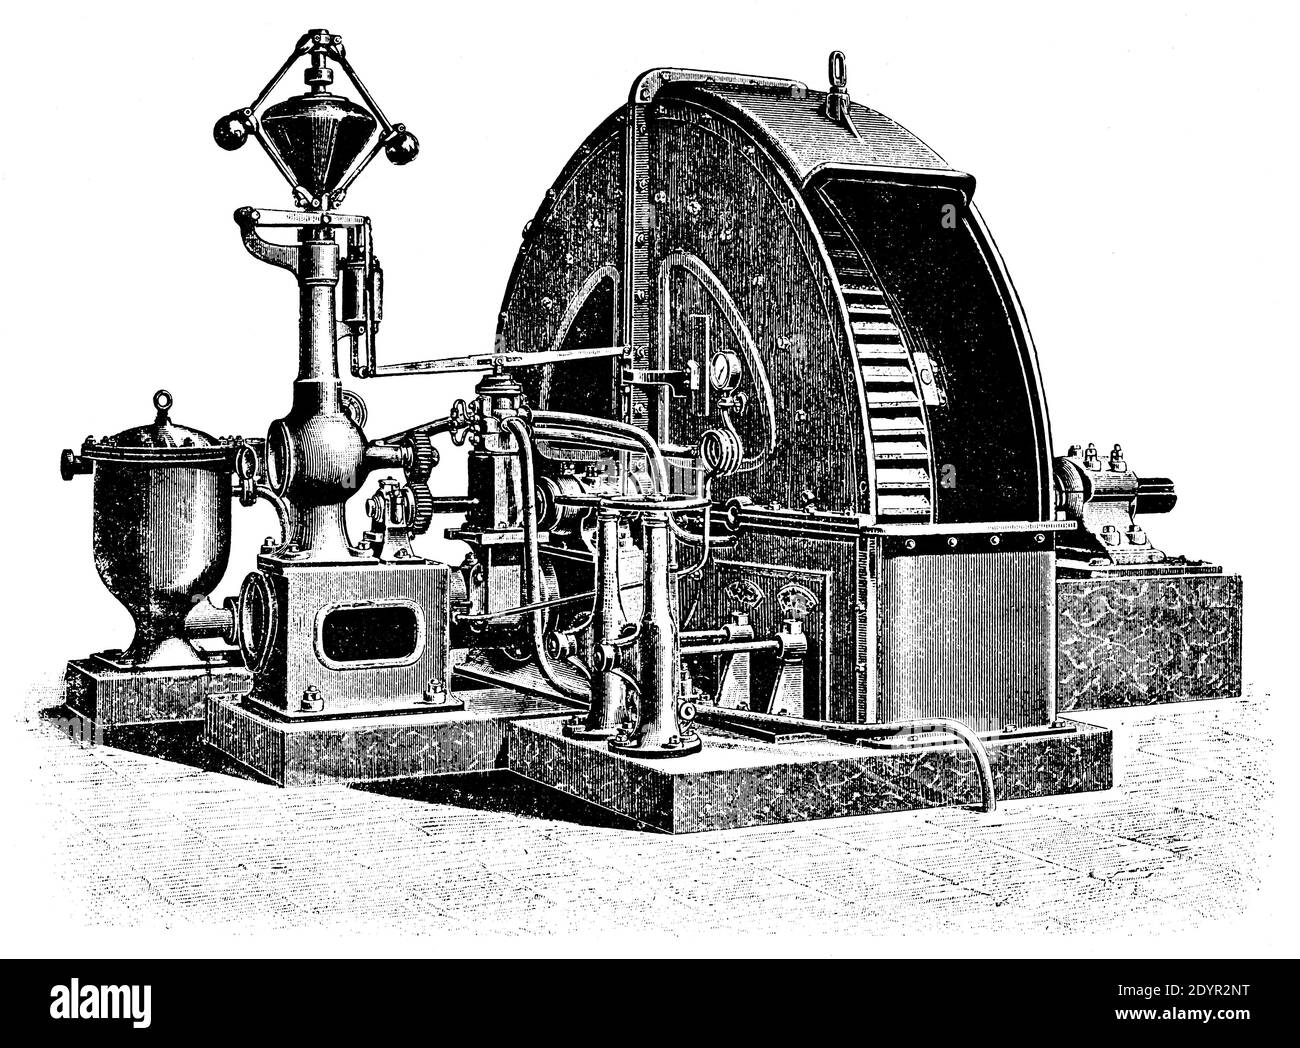 Turbine à eau par un ingénieur hydraulique français Louis Dominique Girard. Illustration du 19e siècle. Allemagne. Arrière-plan blanc. Banque D'Images